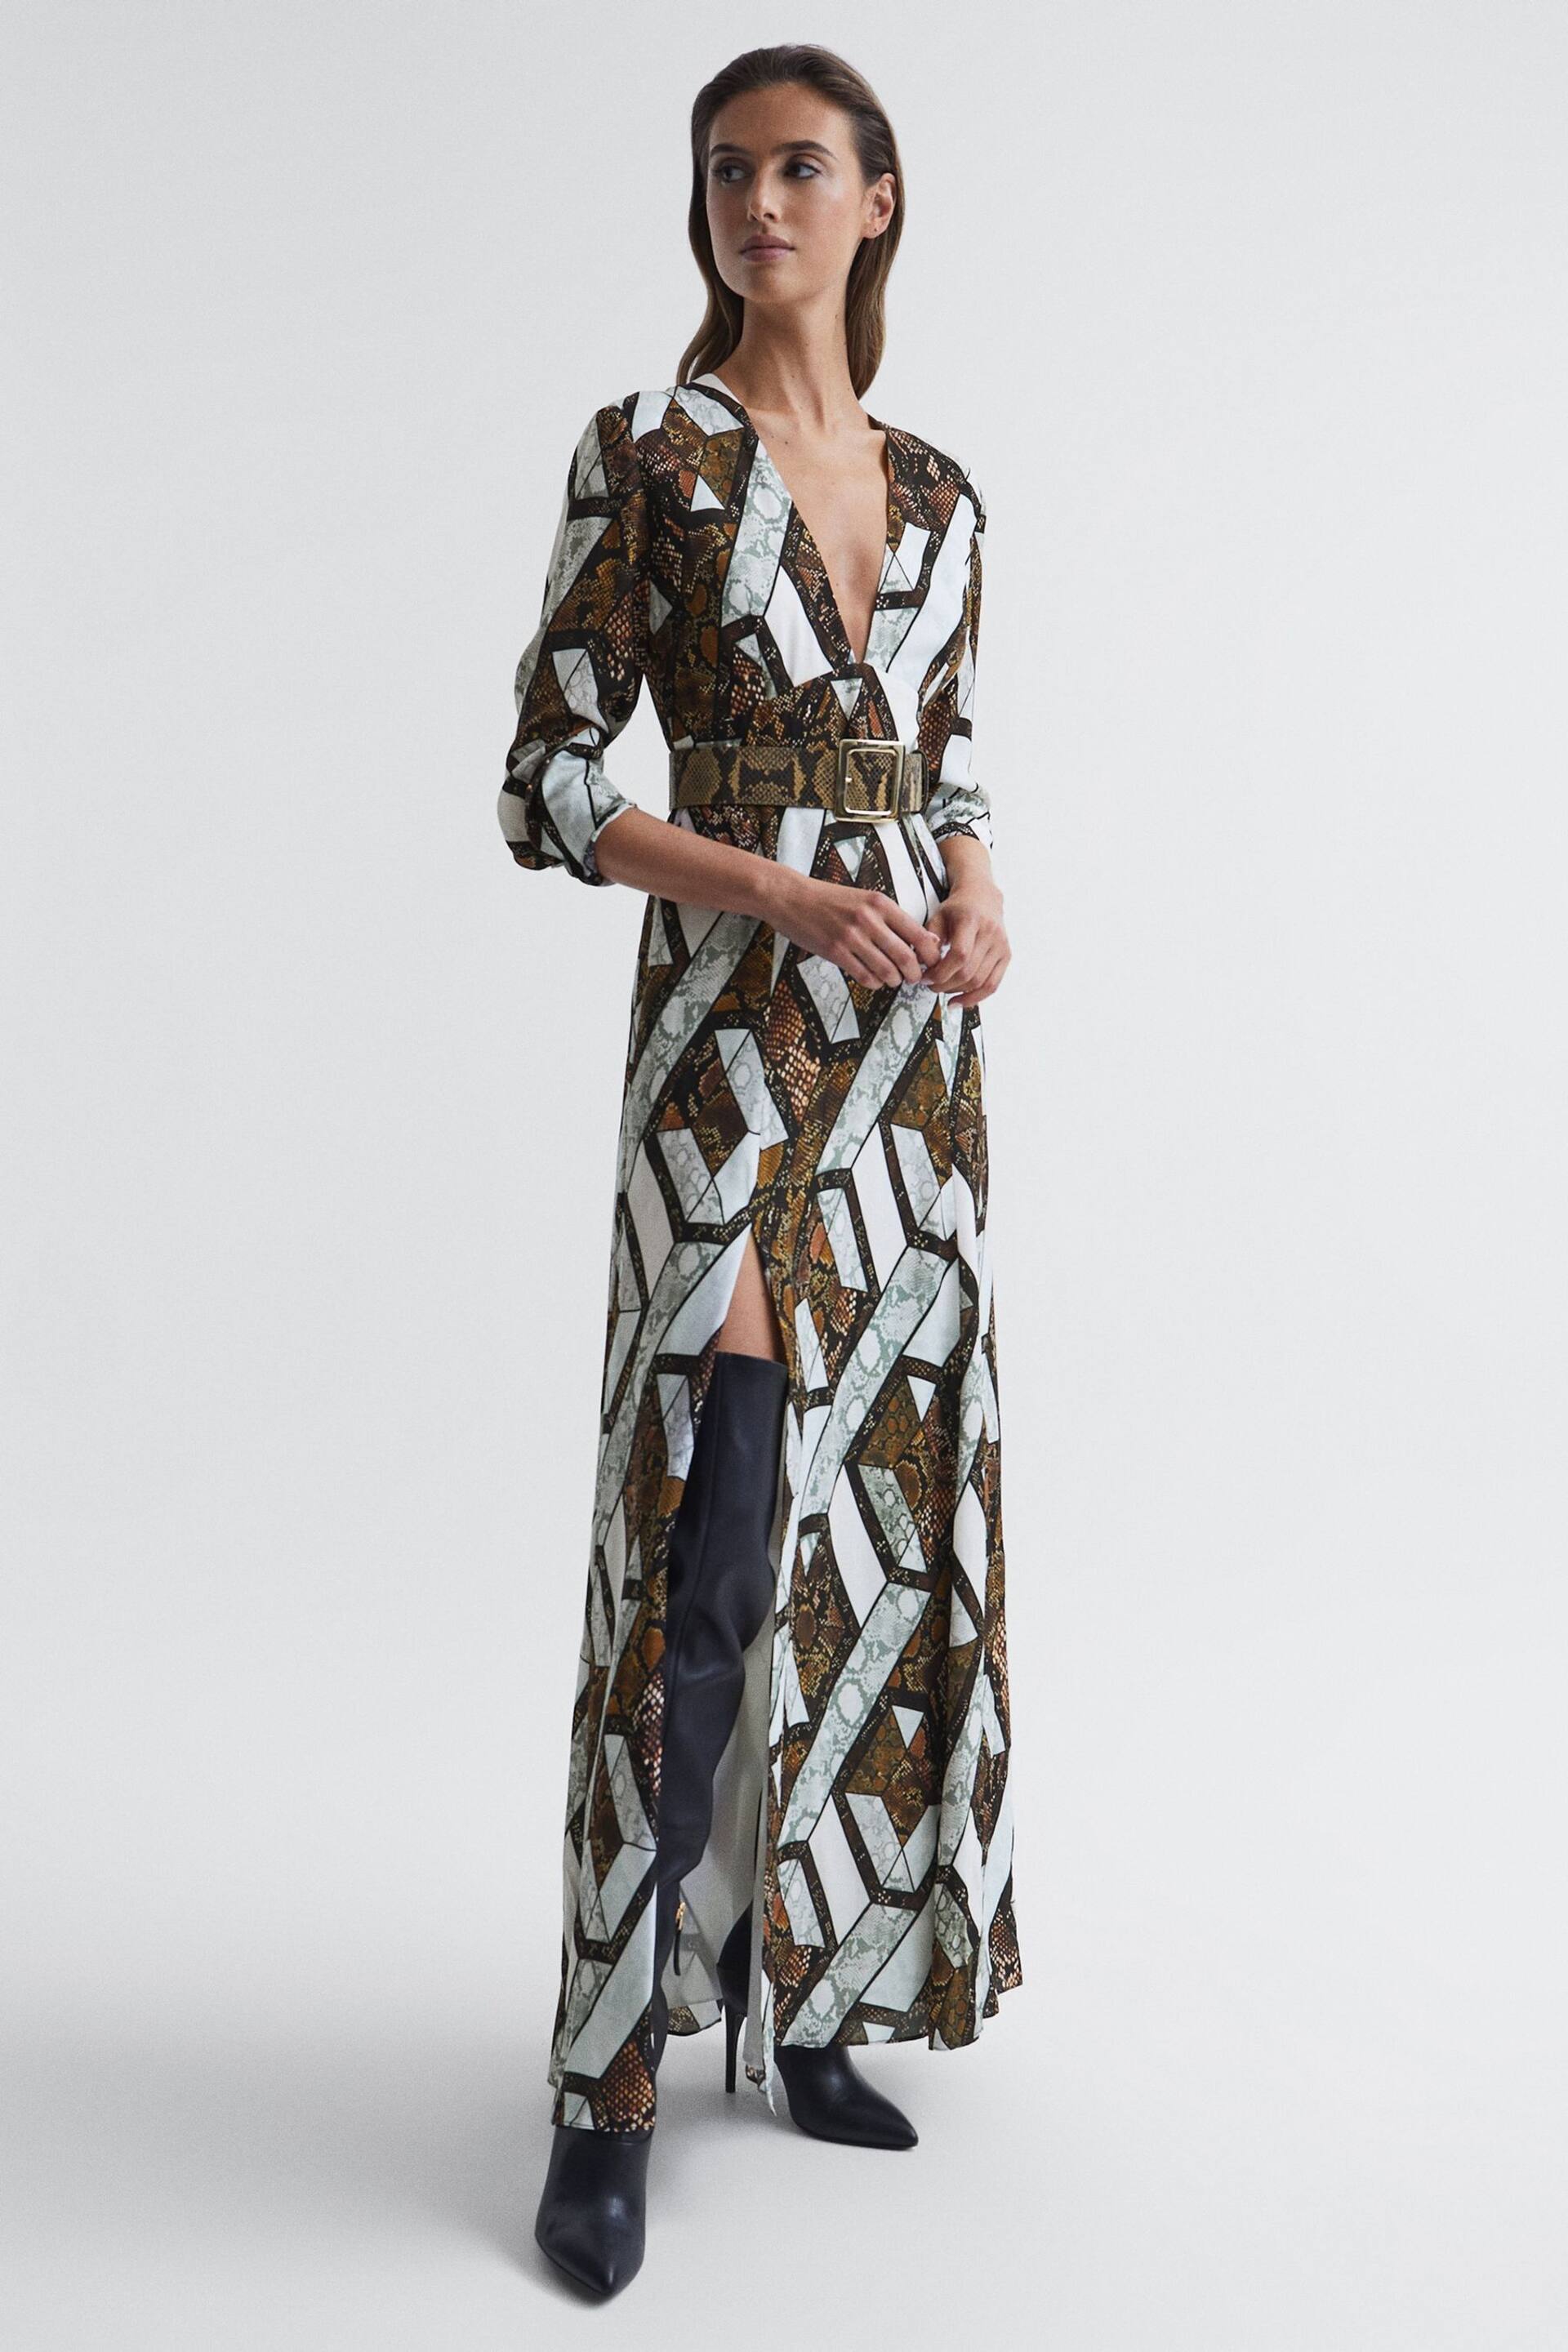 Reiss Brown Loren Petite Snake Print Plunge Maxi Dress - Image 7 of 9